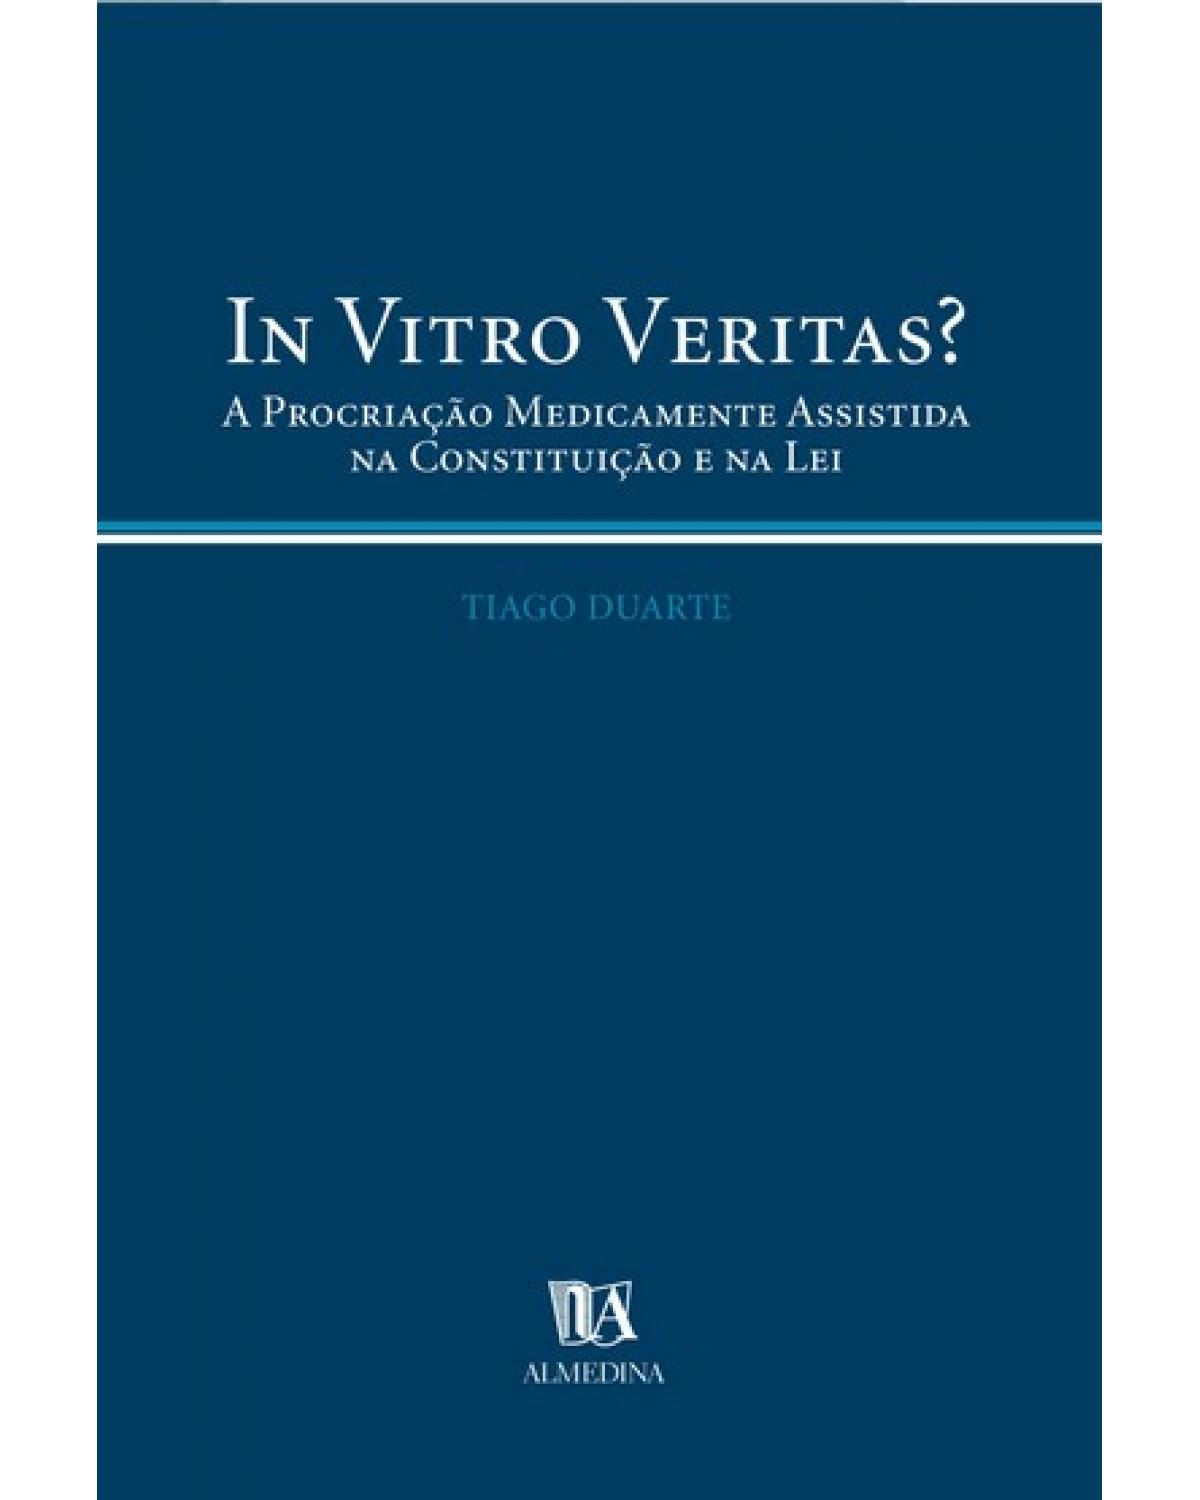 In vitro veritas? - a procriação medicamente assistida na constituição e na lei - 1ª Edição | 2003